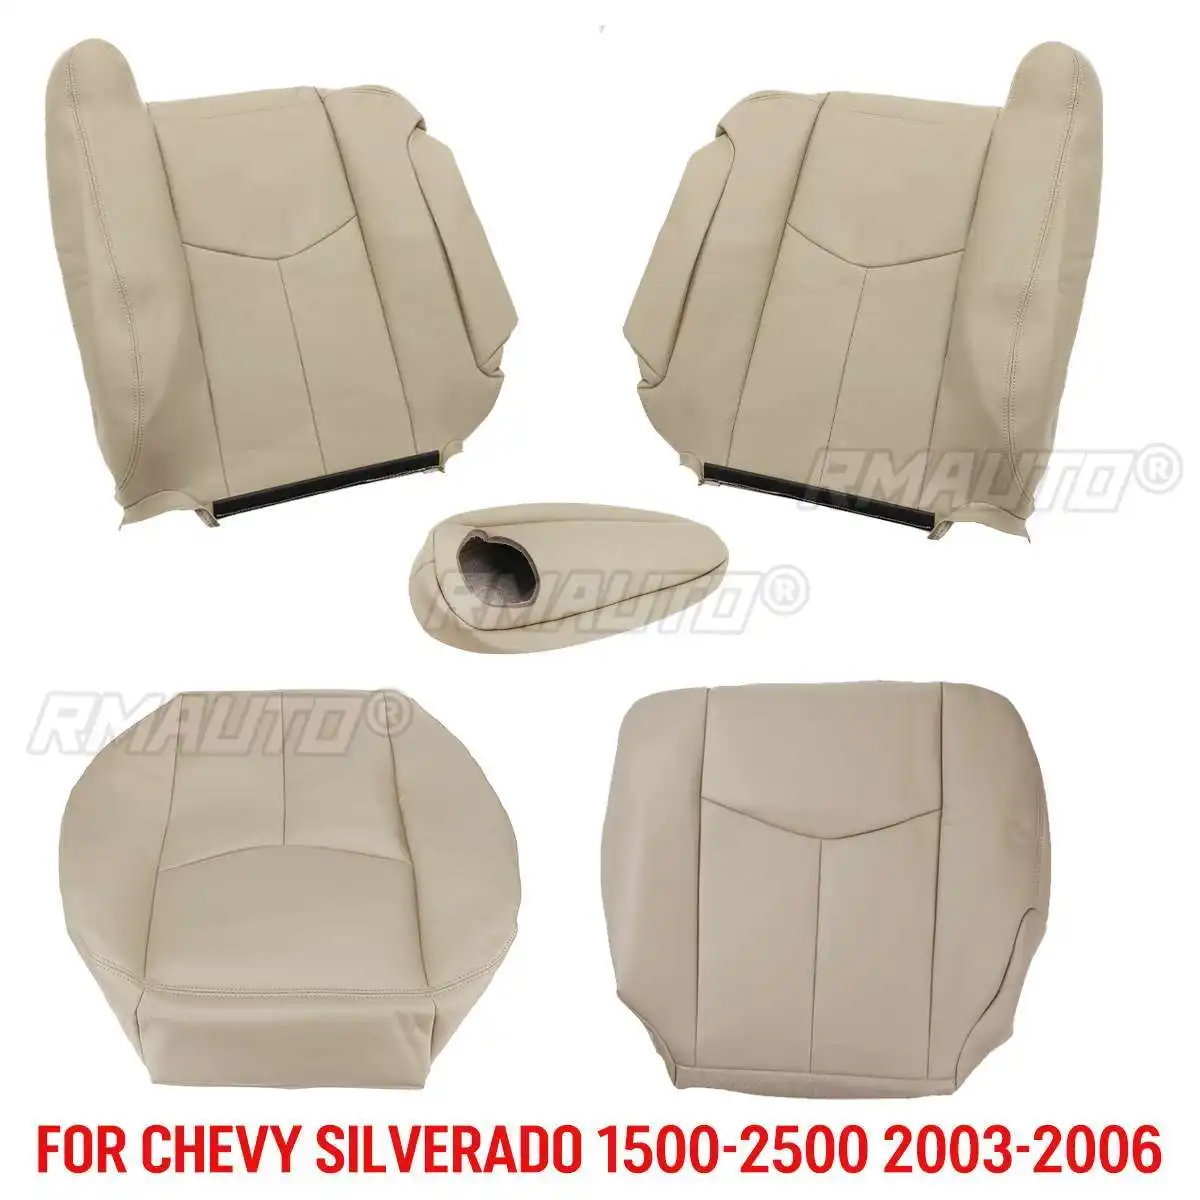 चेवी सिल्वरडो 1500-2500 2003 2004 2005 2006 के लिए कार सीट कवर ड्राइवर पैसेंजर टॉप बैक/बॉटम आर्मरेस्ट कवर